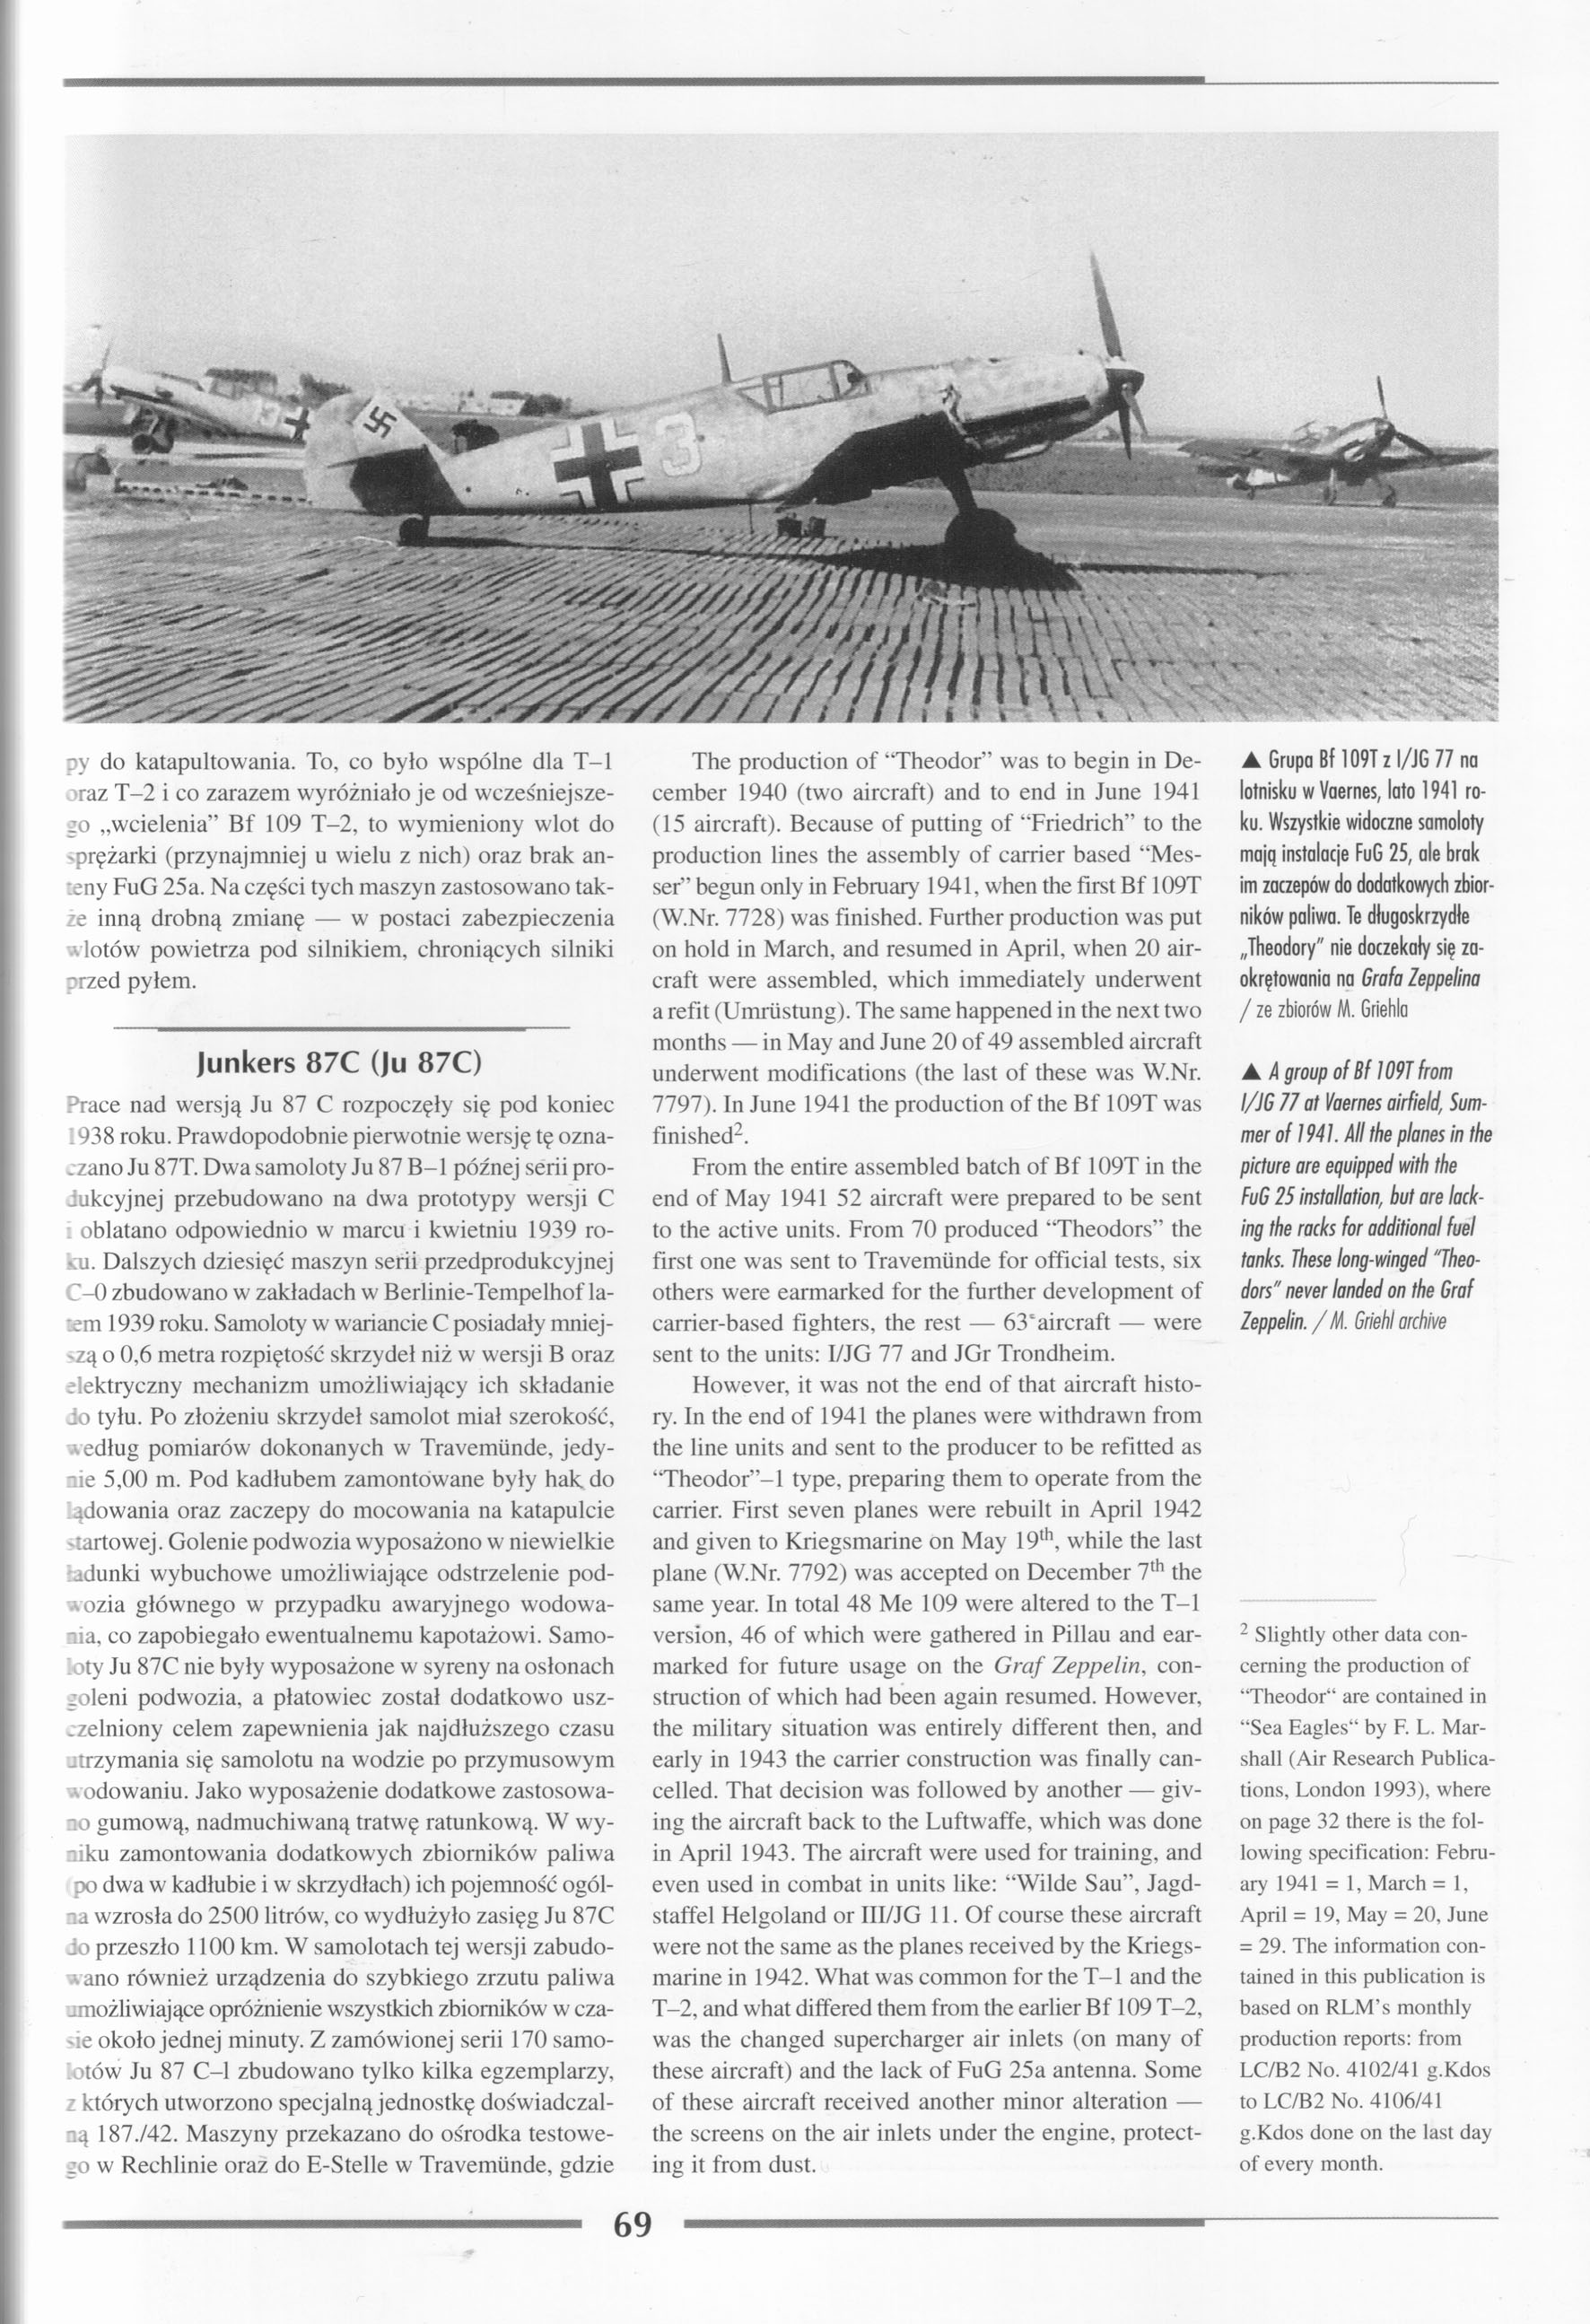 EOW 042 - Niemiecki lotniskowiec Graf Zeppelin [AJ-Press]_071.jpg